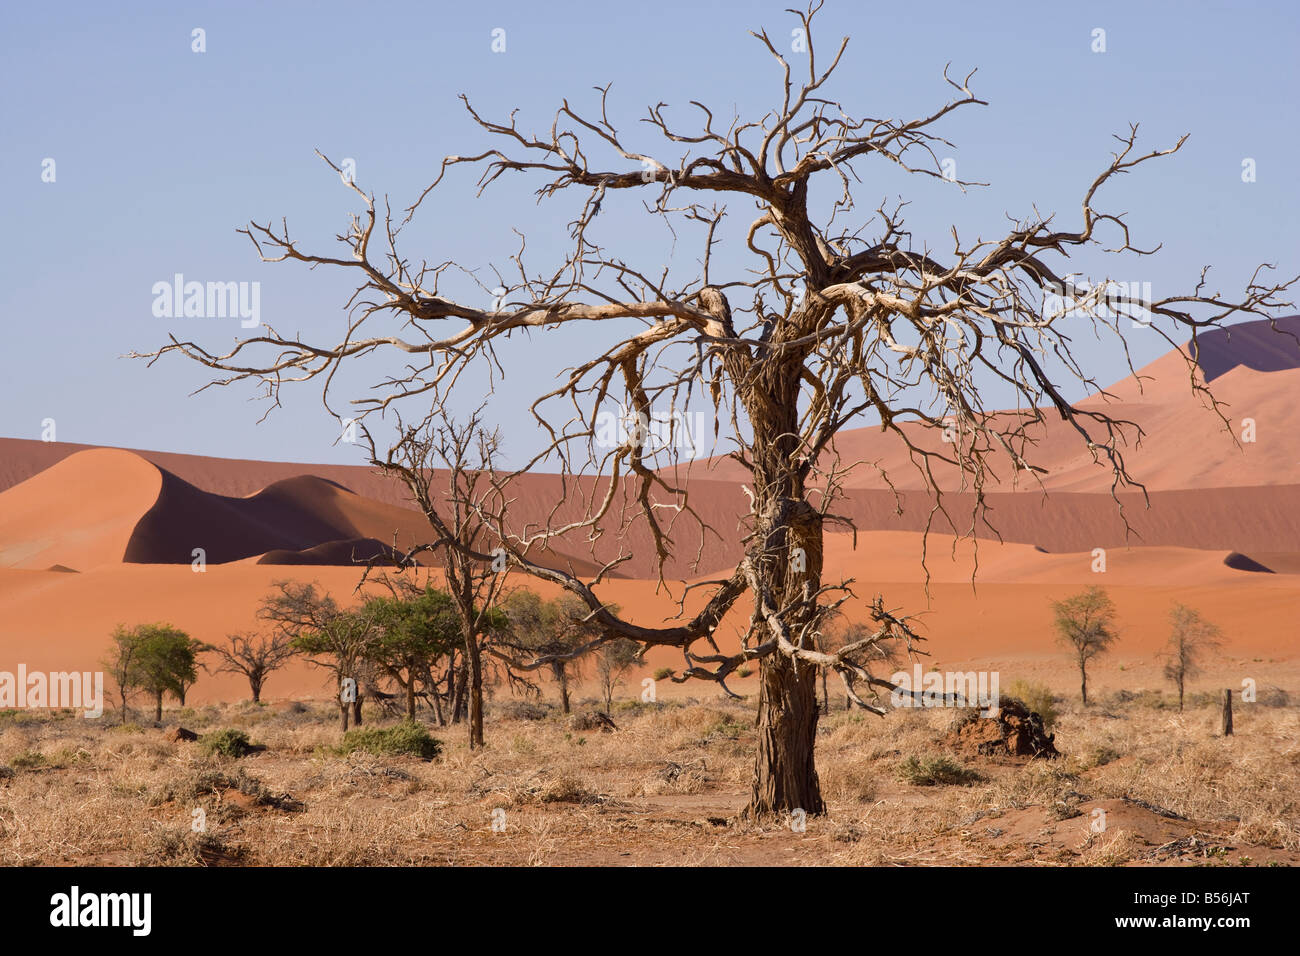 Africa Namibia Namib desert Naukluft dune sand Stock Photo